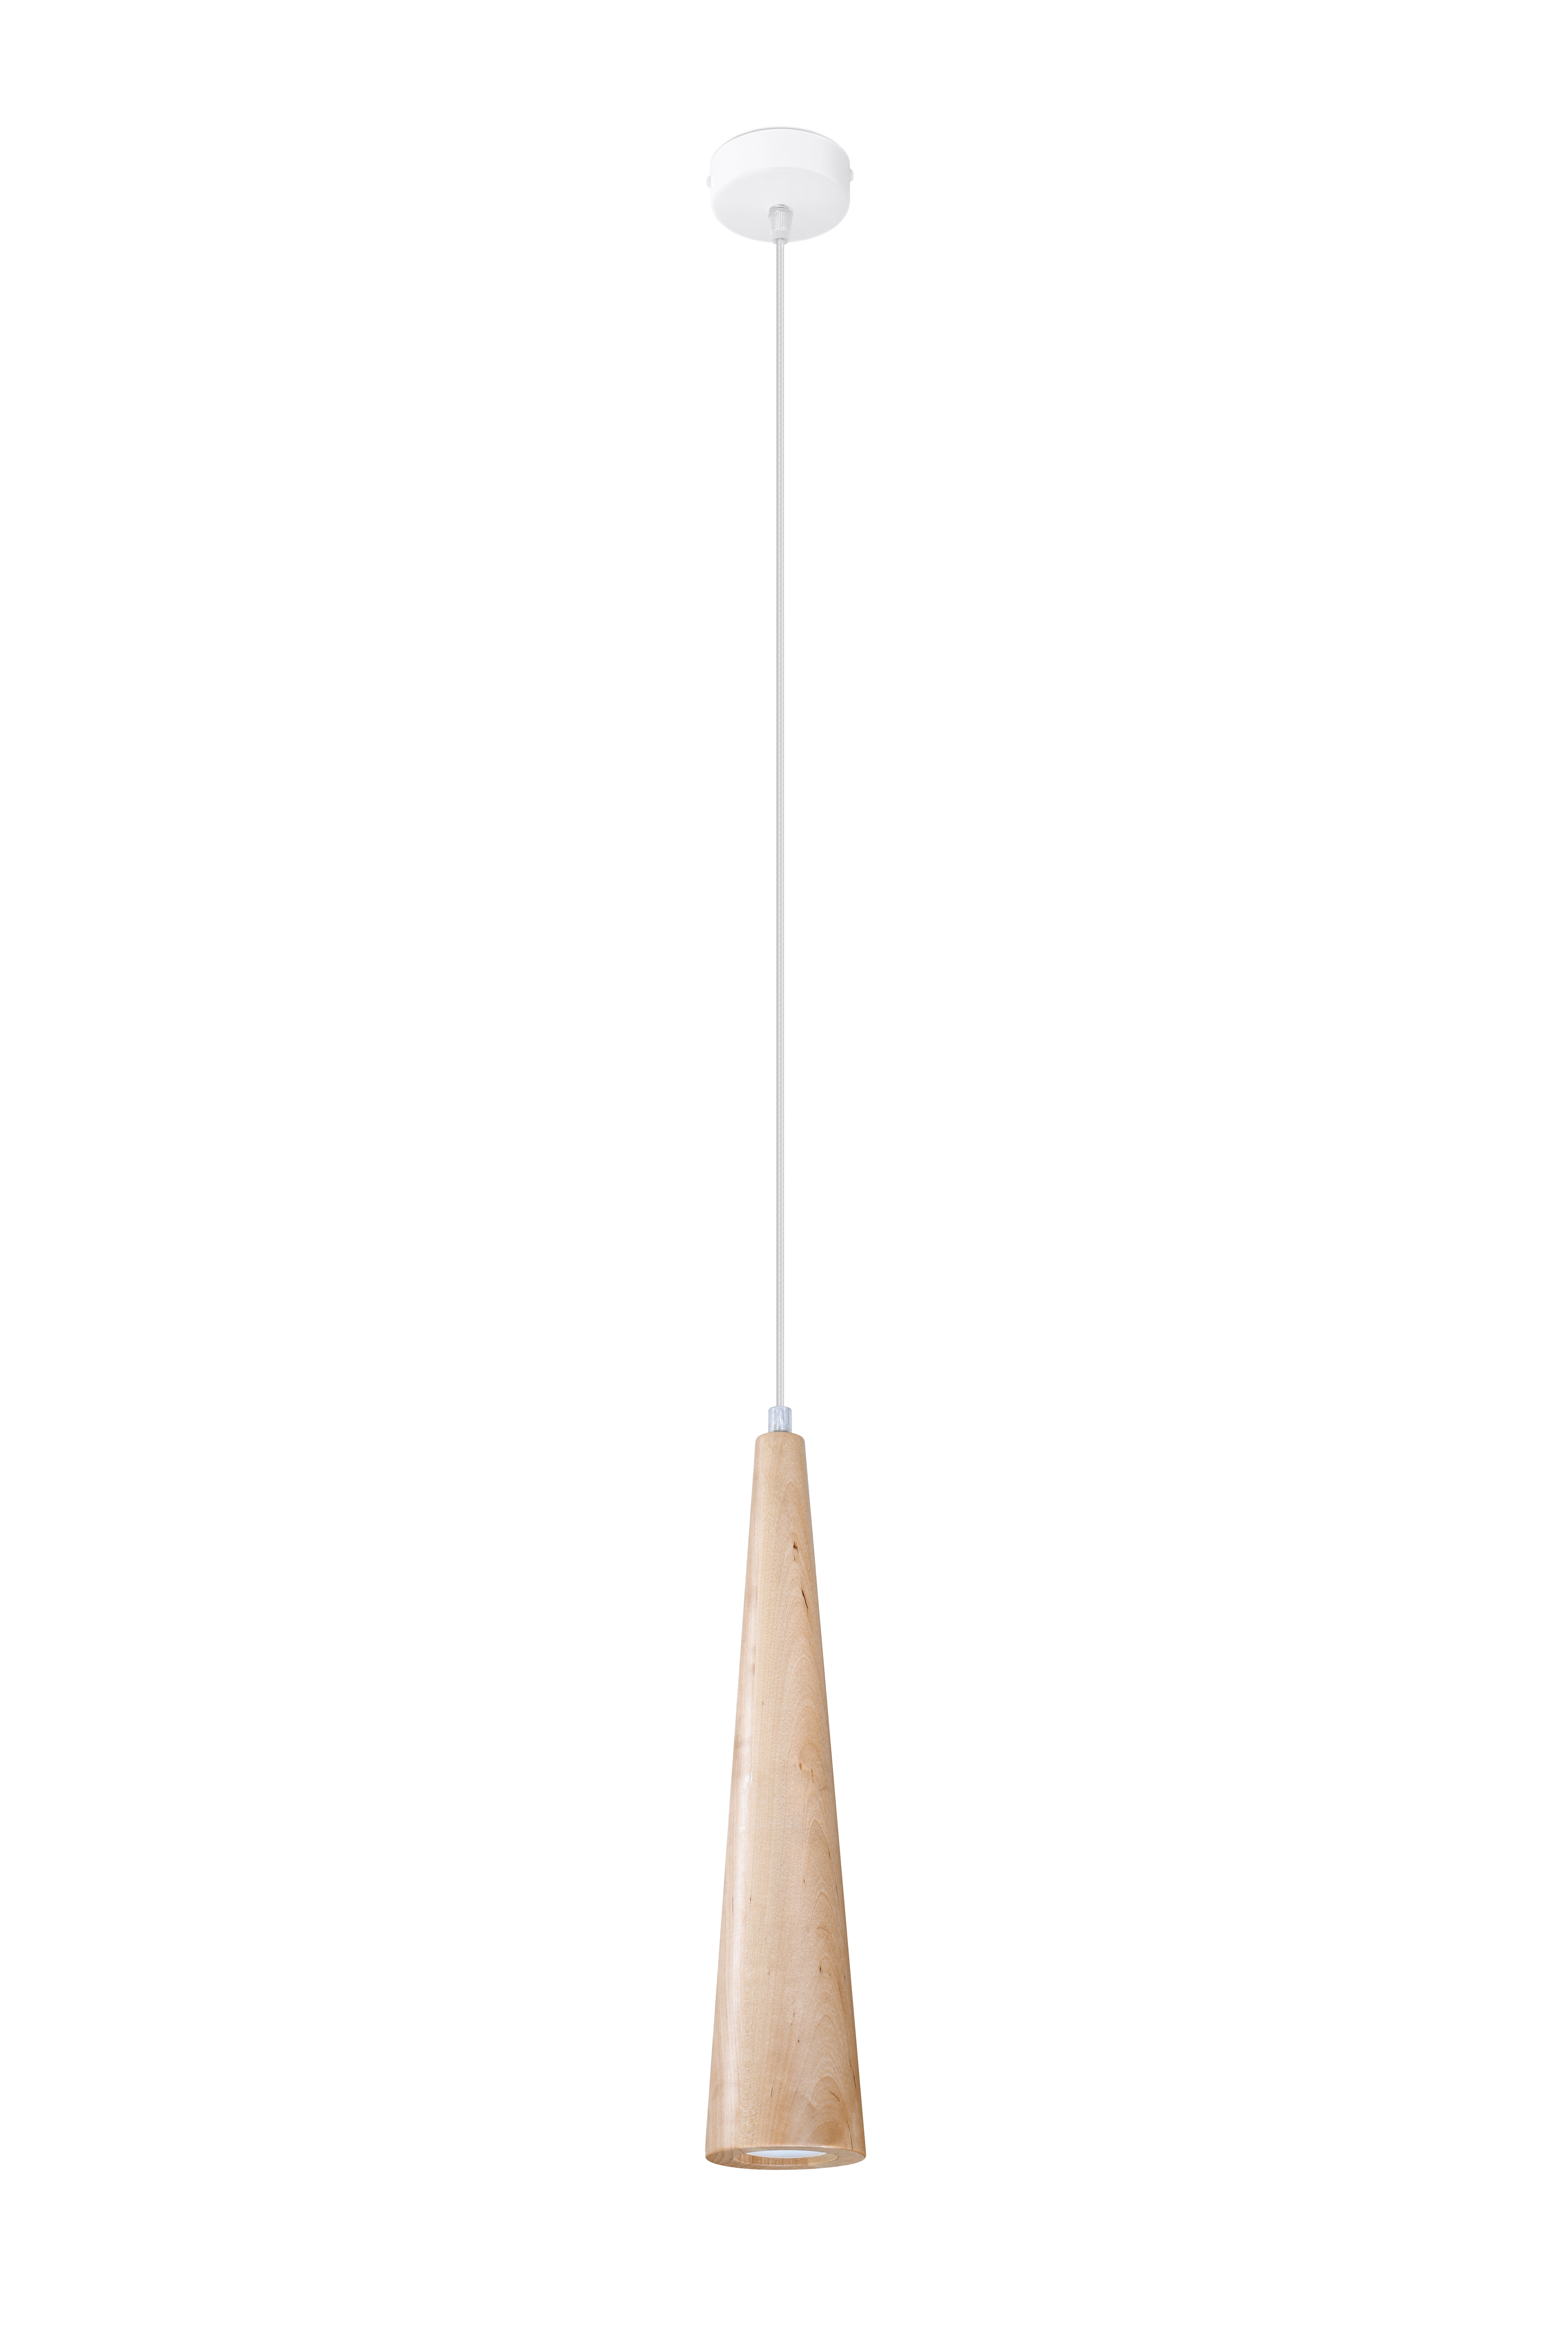 Pendelleuchte SULA mit Schirm aus natural Holz Birke inkl. LED warmweiß 7W  | LichtED.de - LED Lampen und Beleuchtung